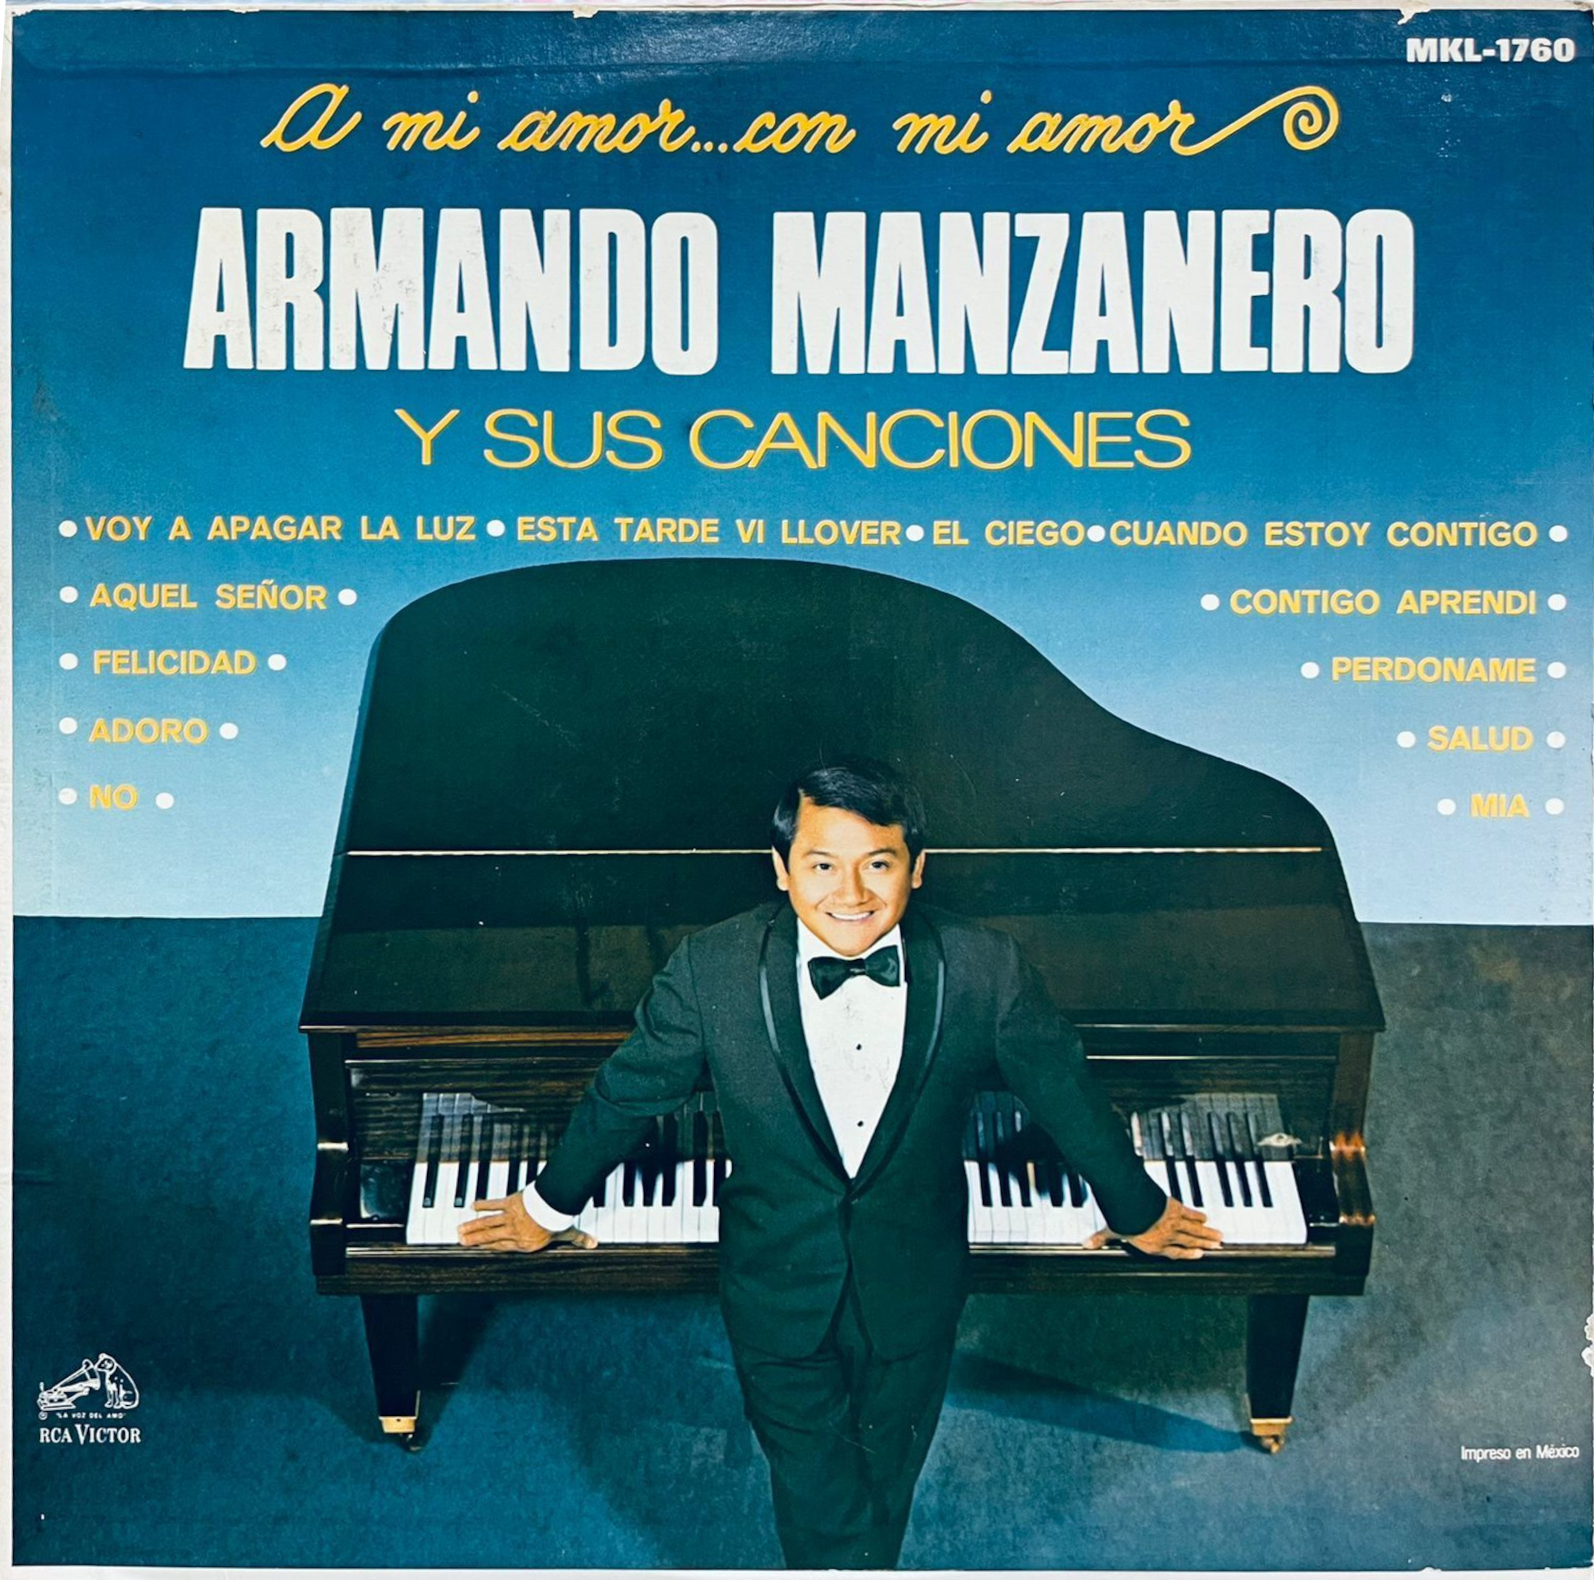 A mi amor... con mi amor Armando Manzanero